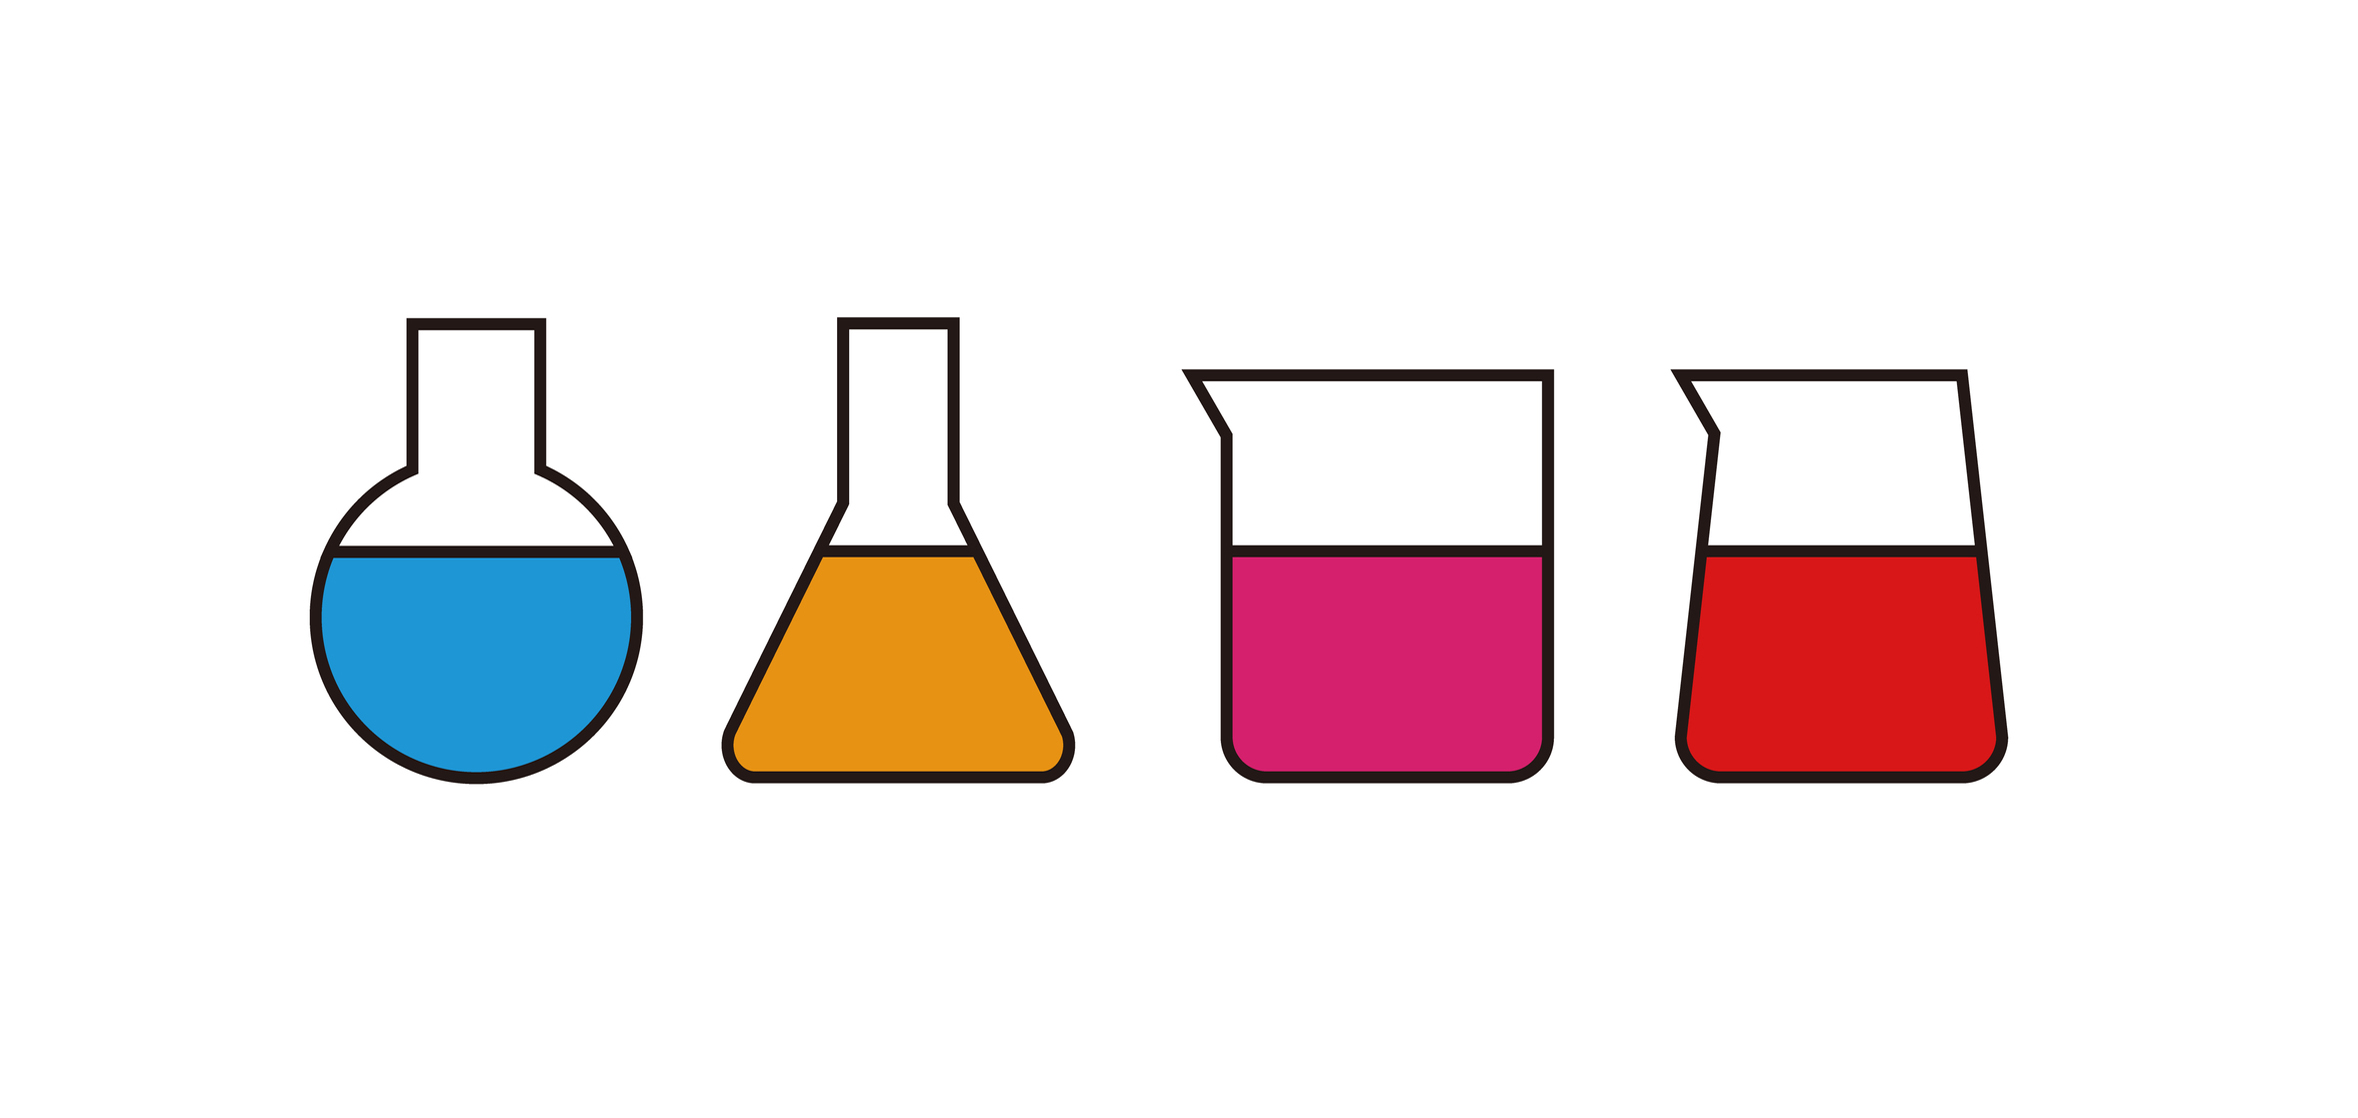 フェノールフタレイン液と色の変化 簡単な覚え方と実験問題の具体例 中学受験ナビ